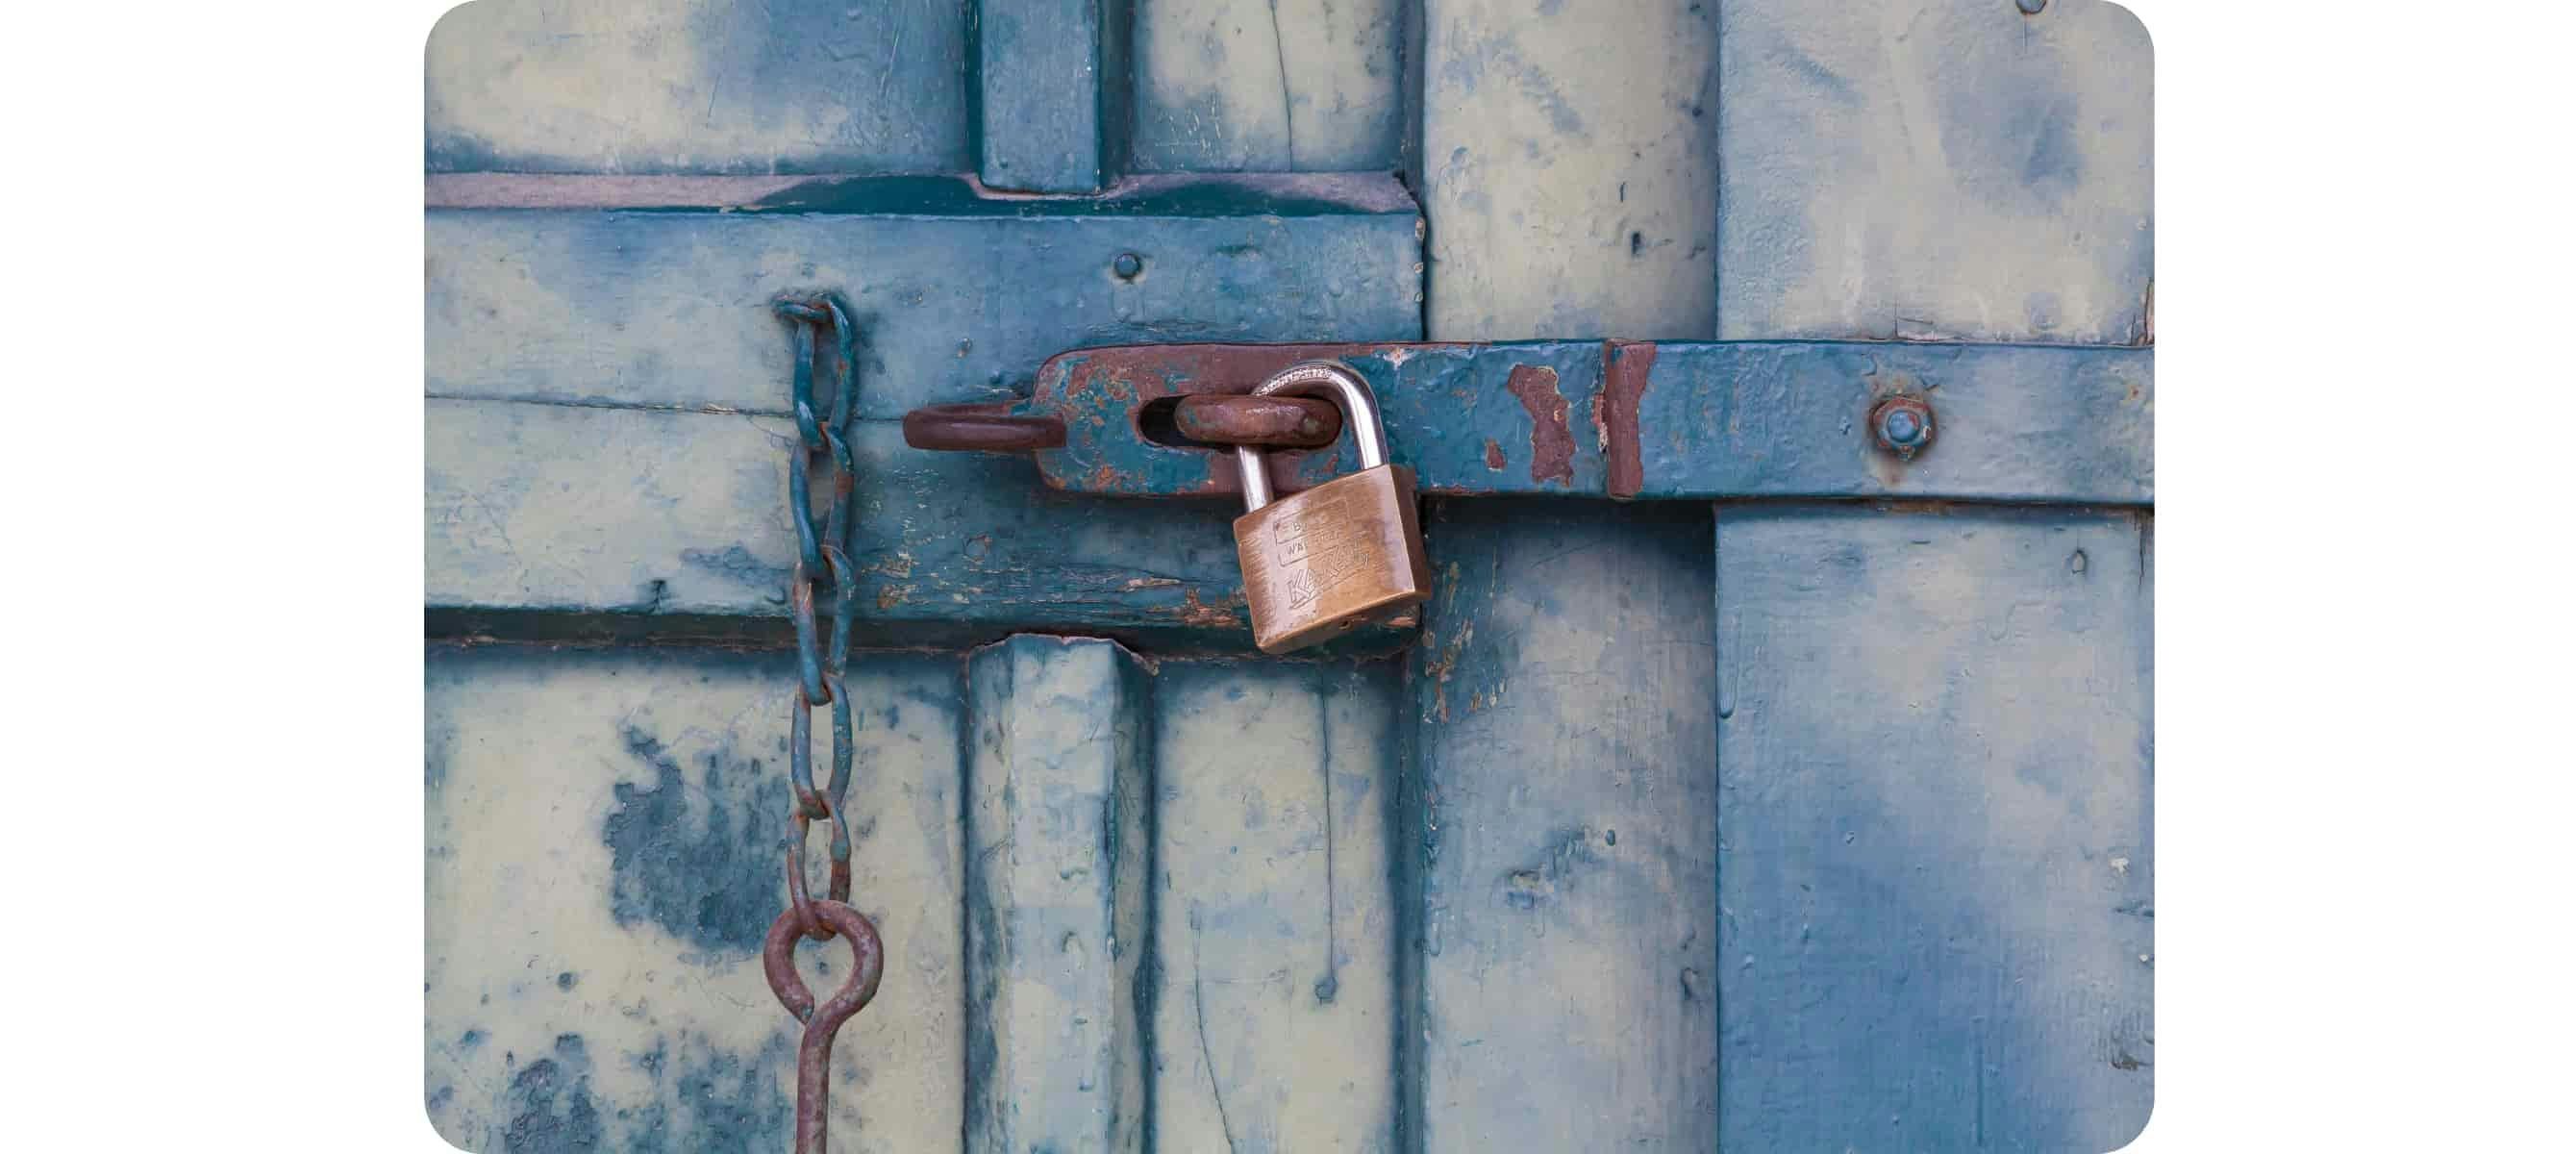 Golden padlock locking the door